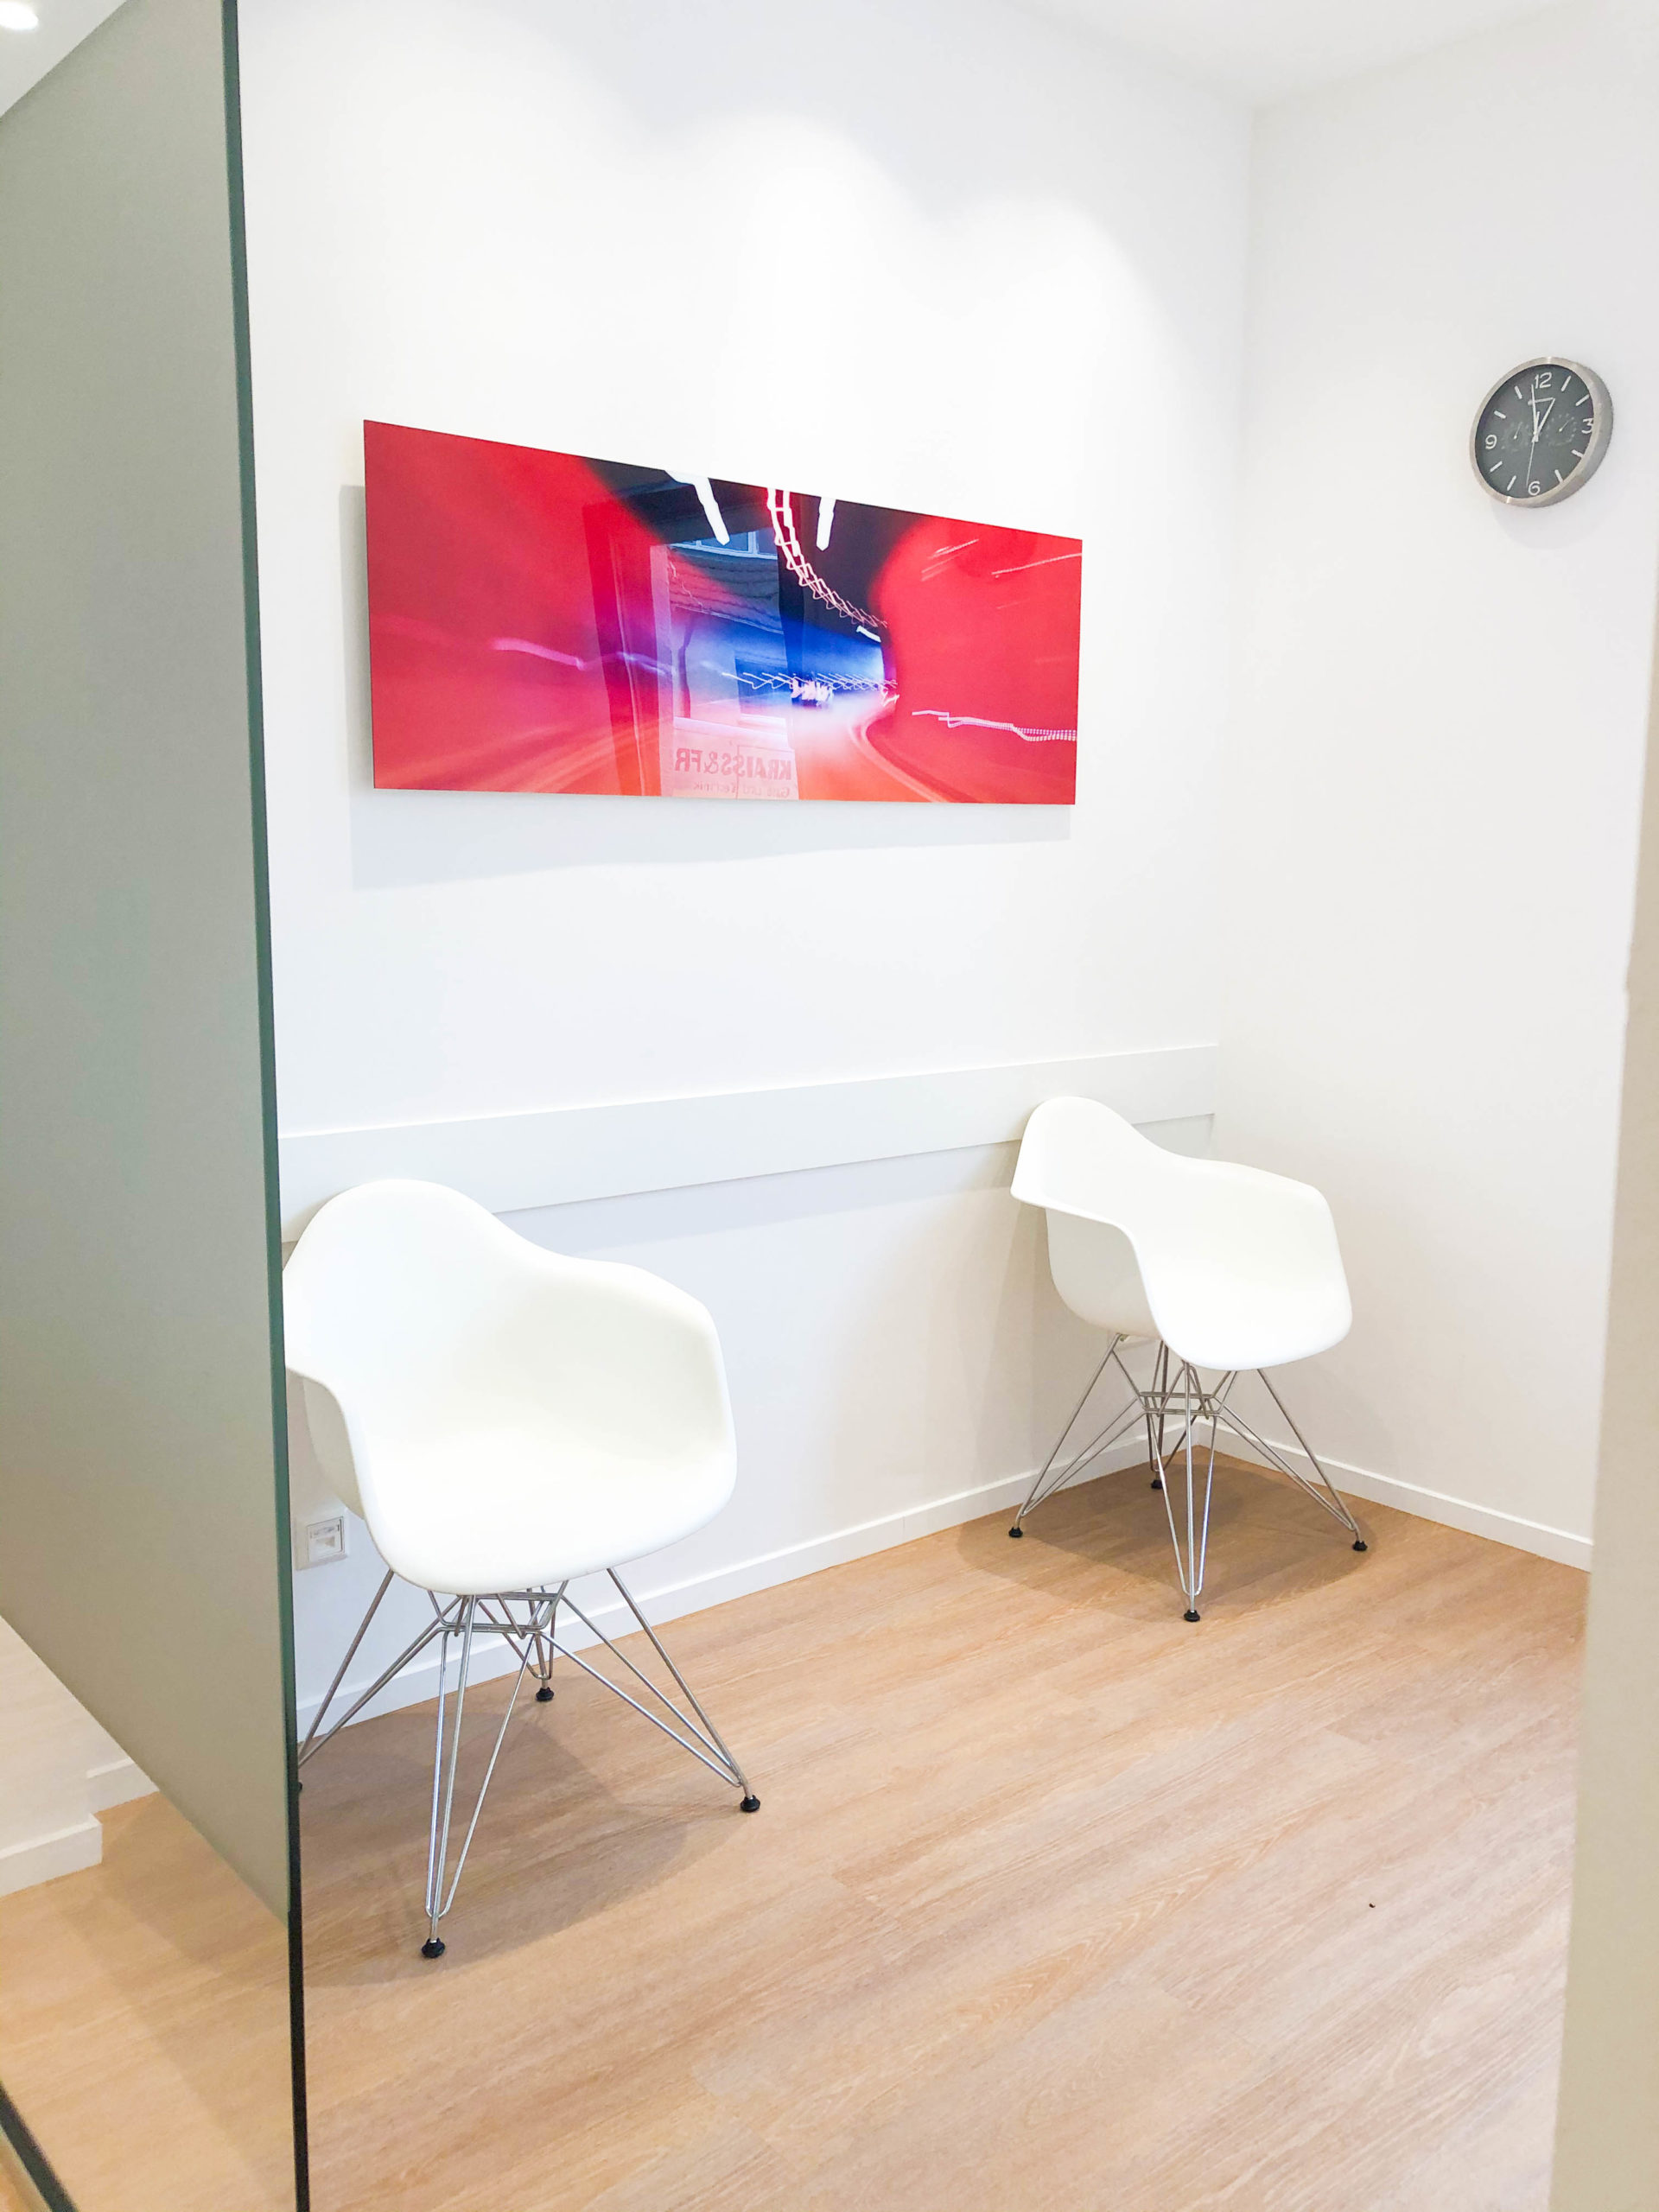 praxis stuttgart dental office design germany consultation room